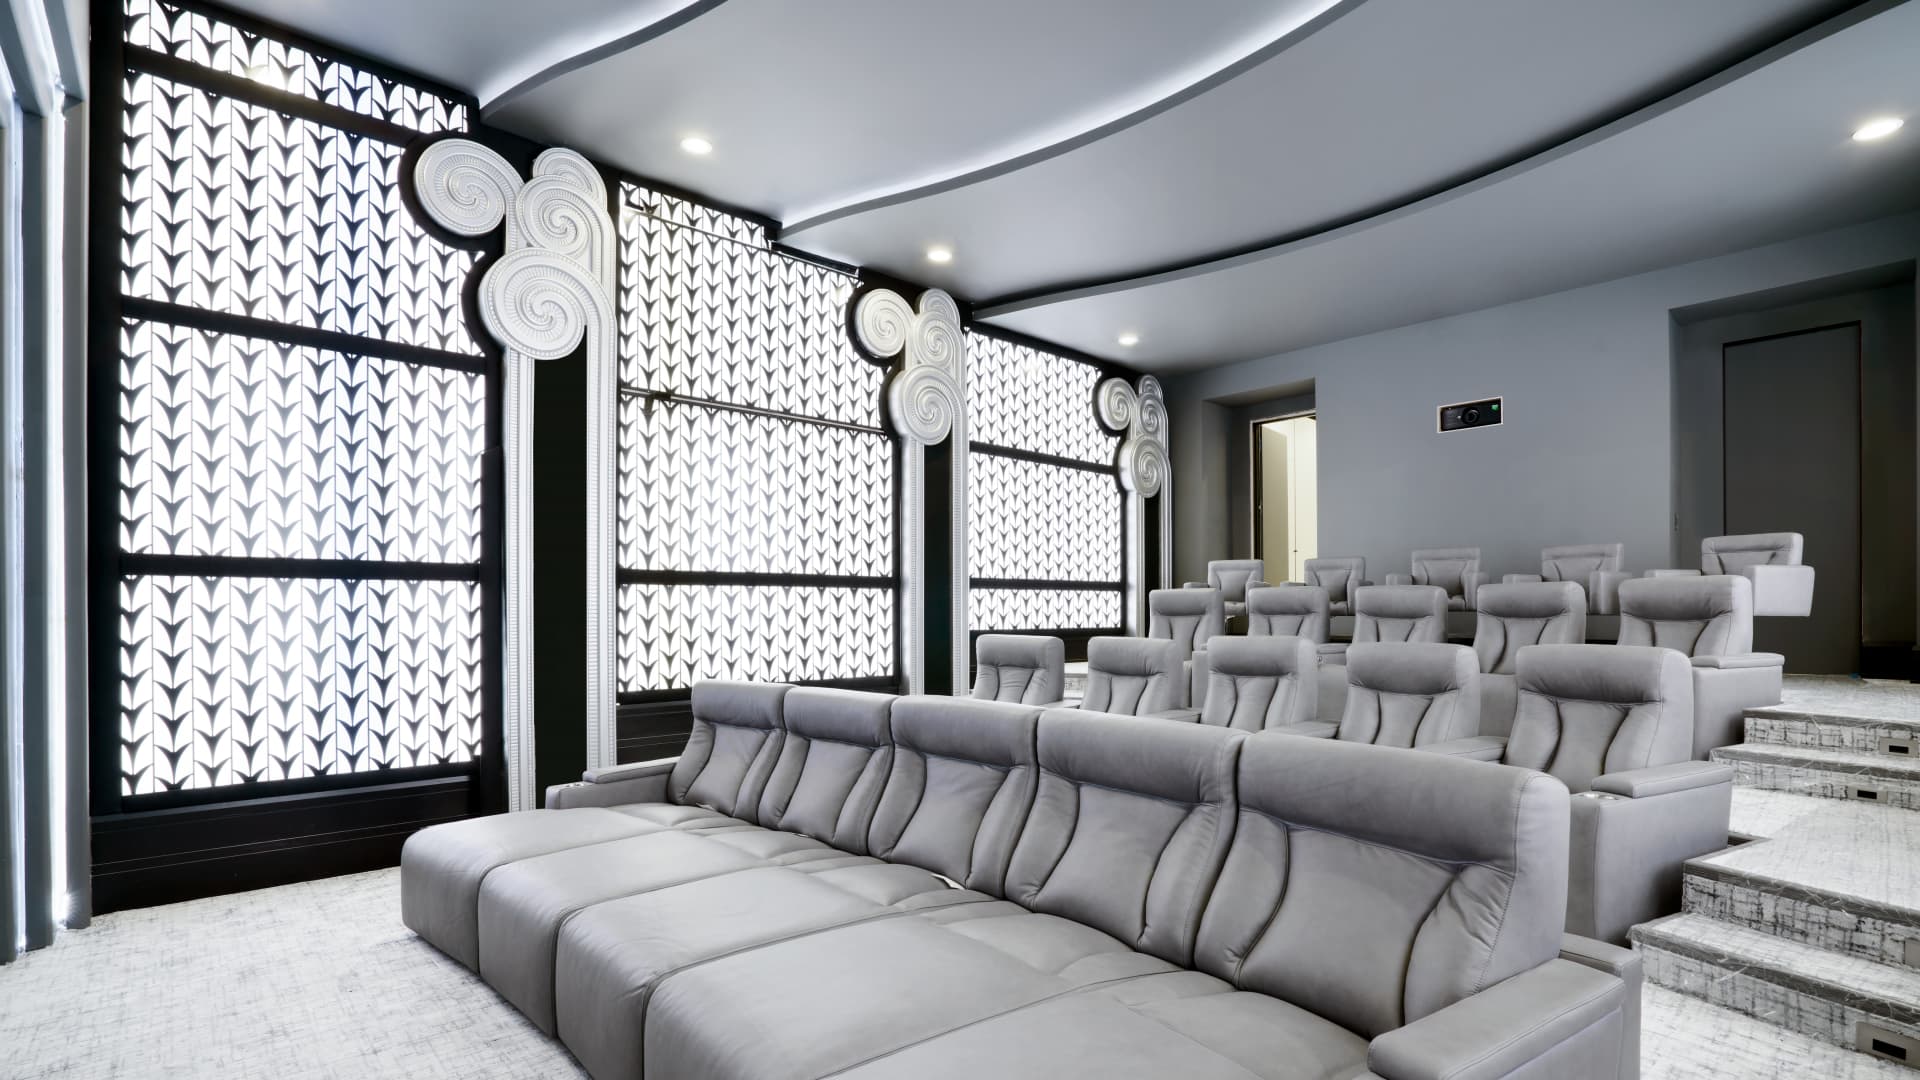 Cinema room